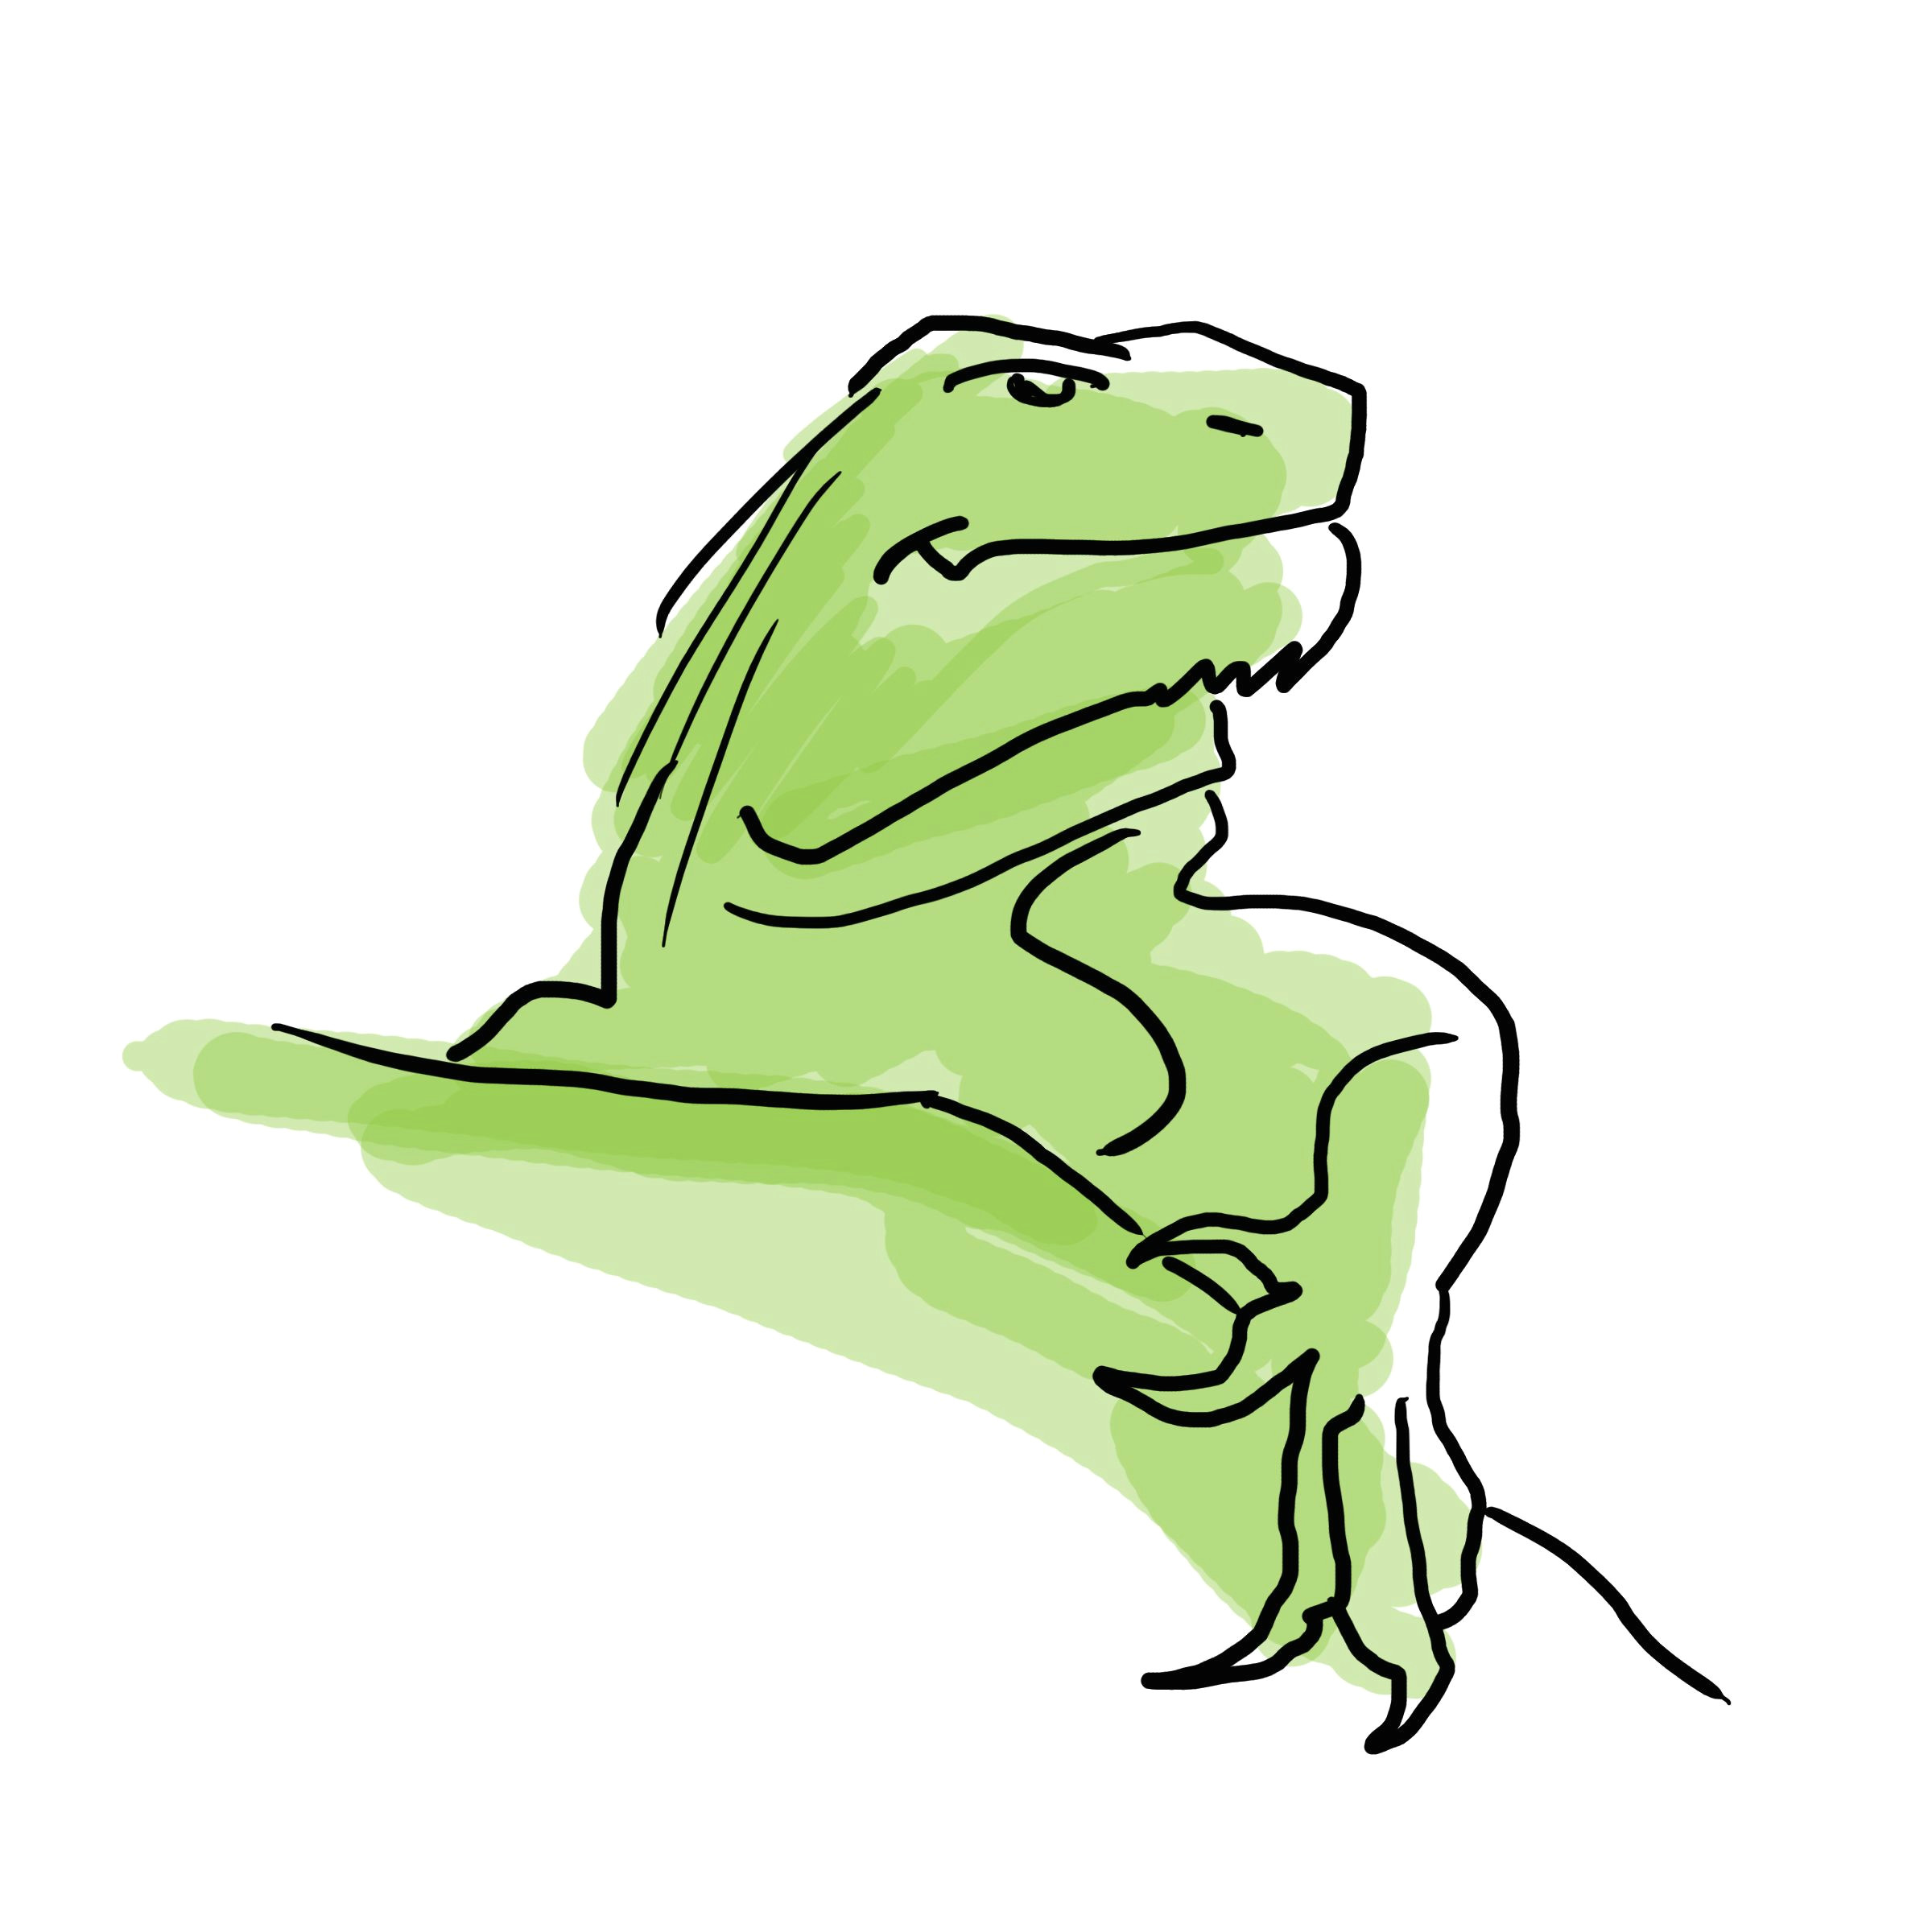 photoshop sketch of an iguana susan sieber